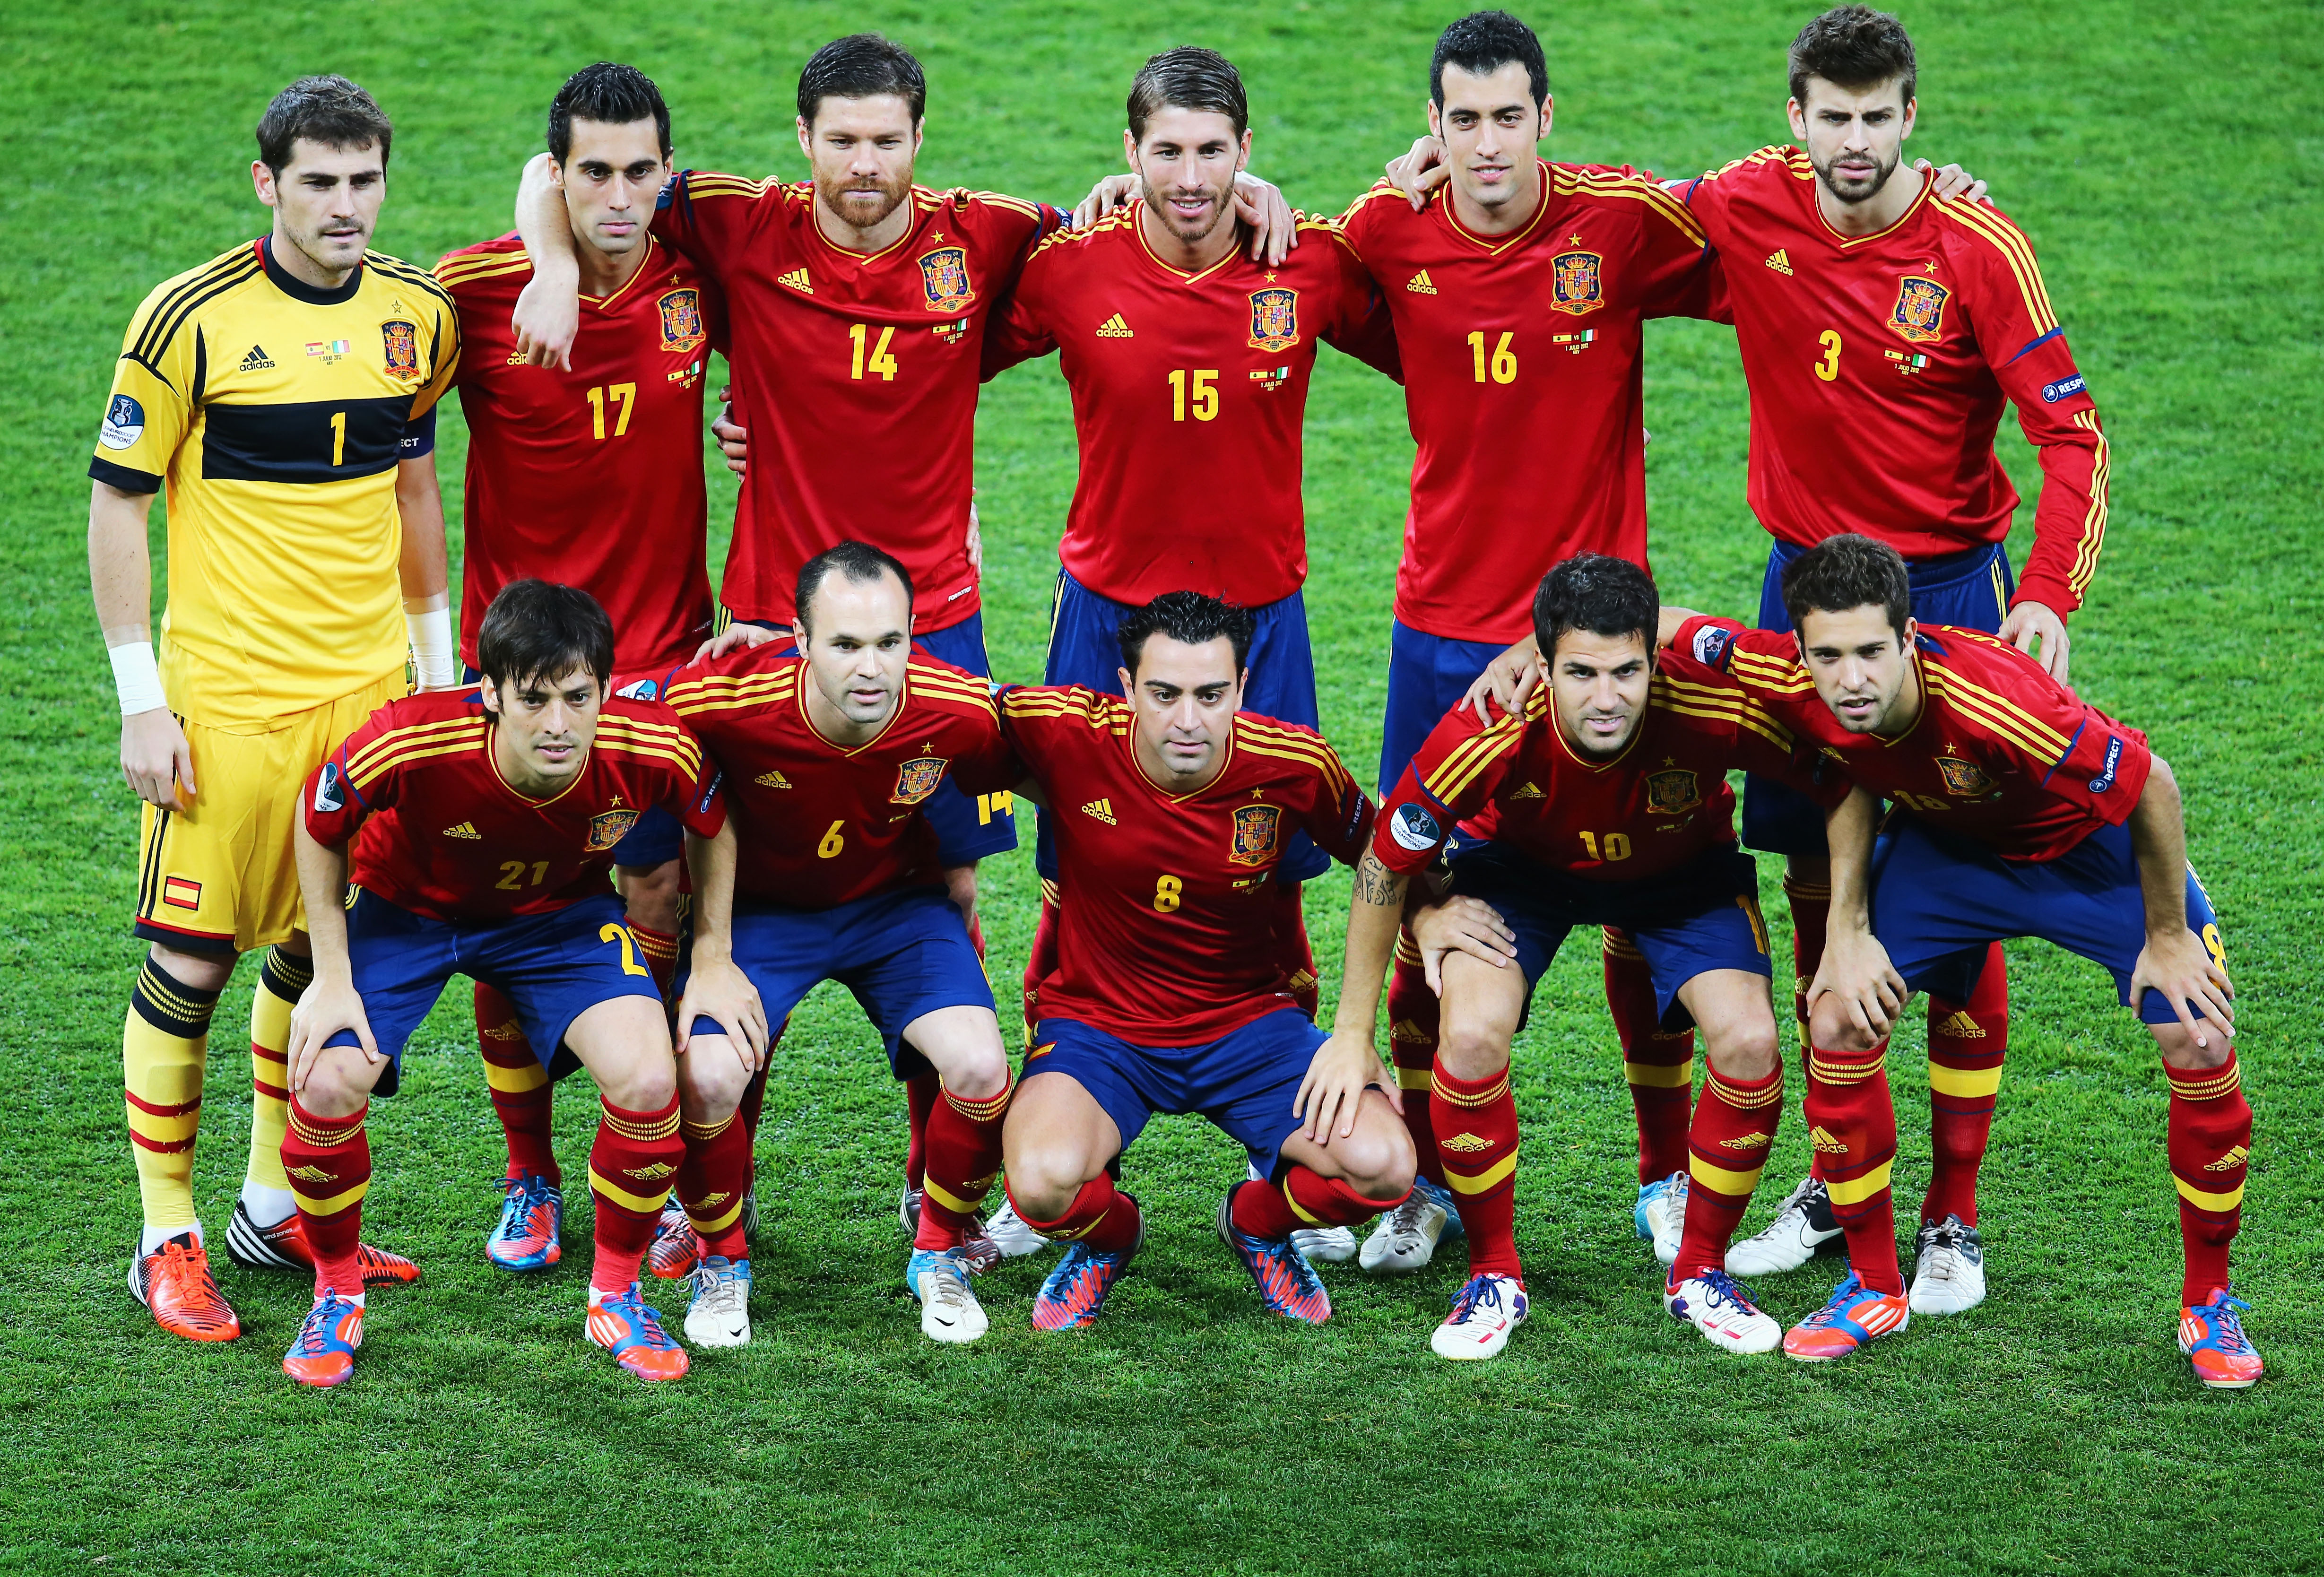 Spaniens startelva, mästarna som spelade det omdiskuterade 4-6-0 i finalen. 